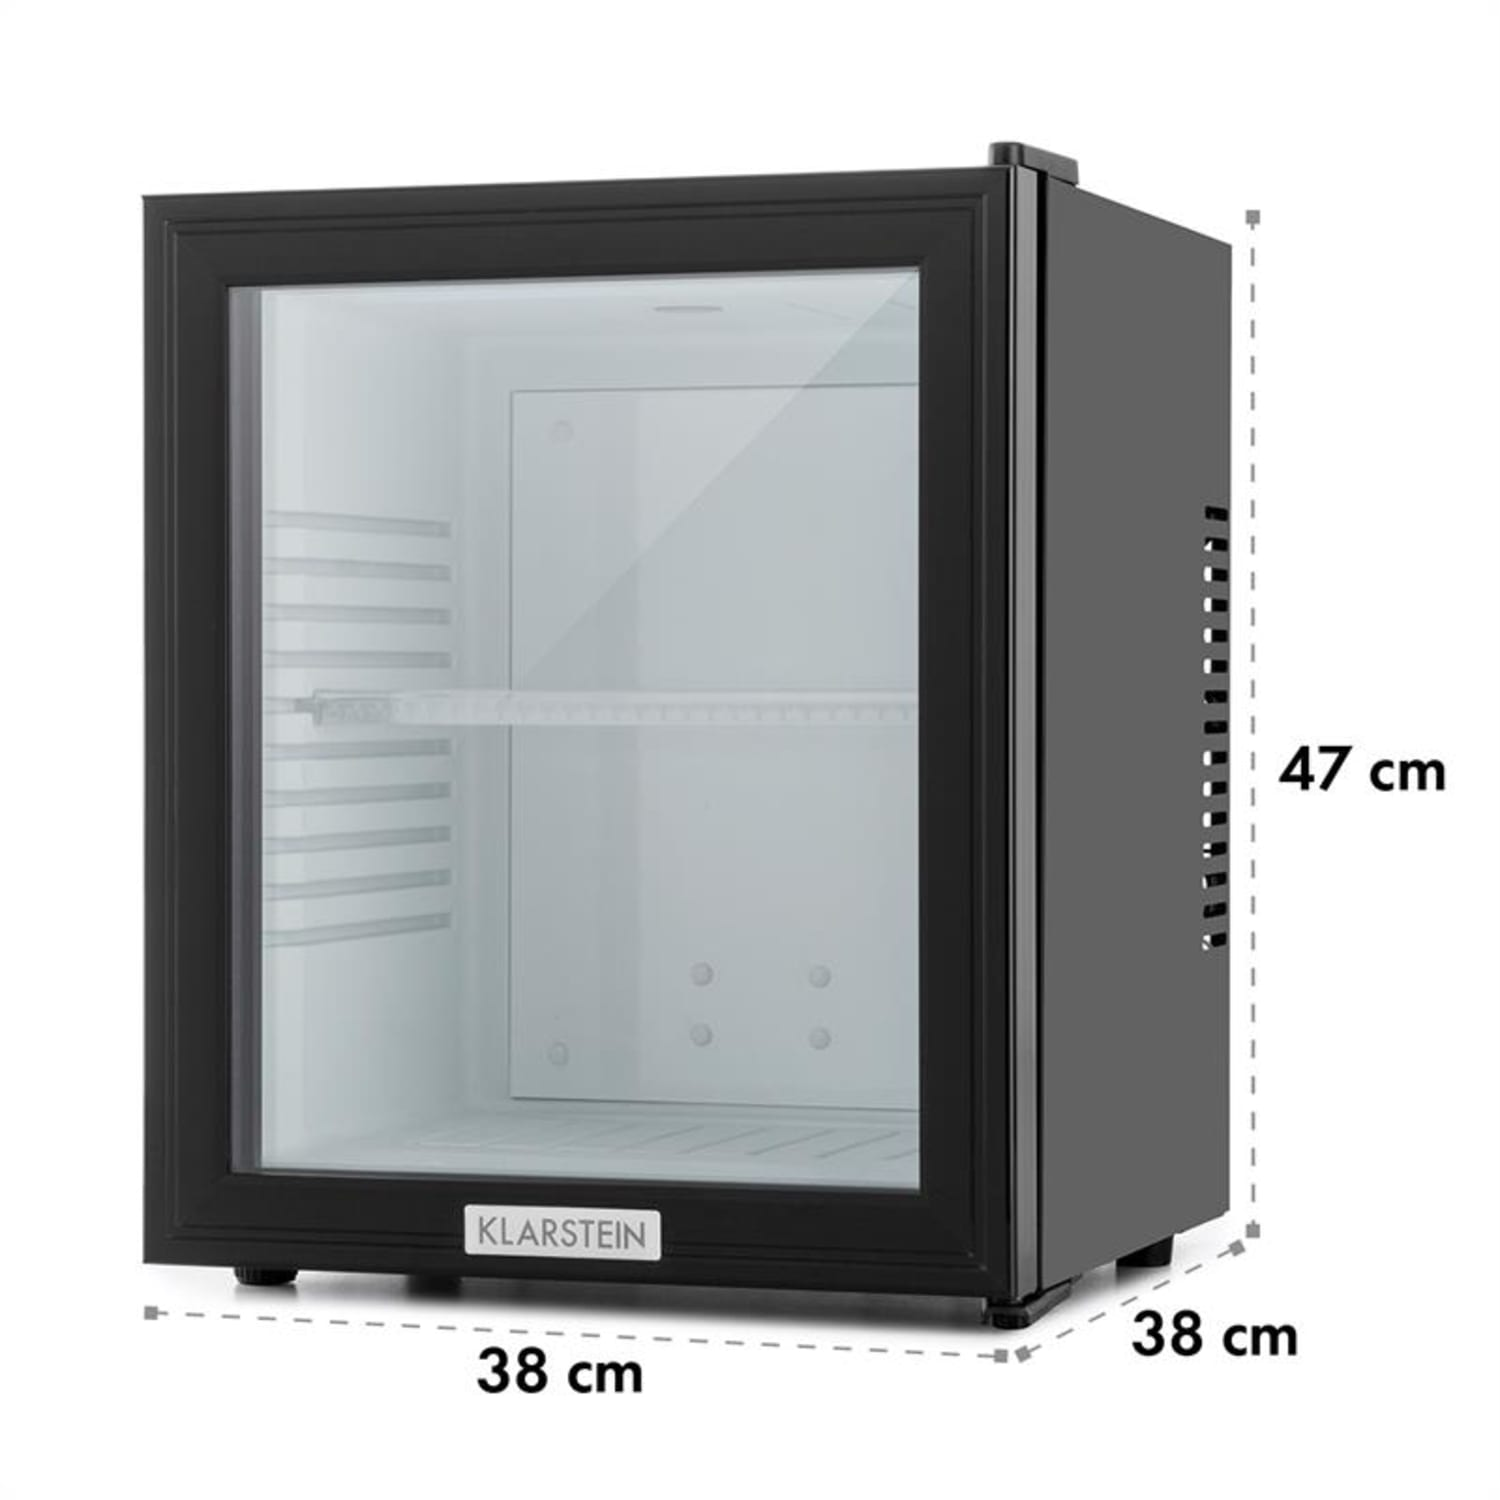 KLARSTEIN Mini-Kühlschrank Schwarz MKS-12 cm / Weiß) hoch, (E, 47